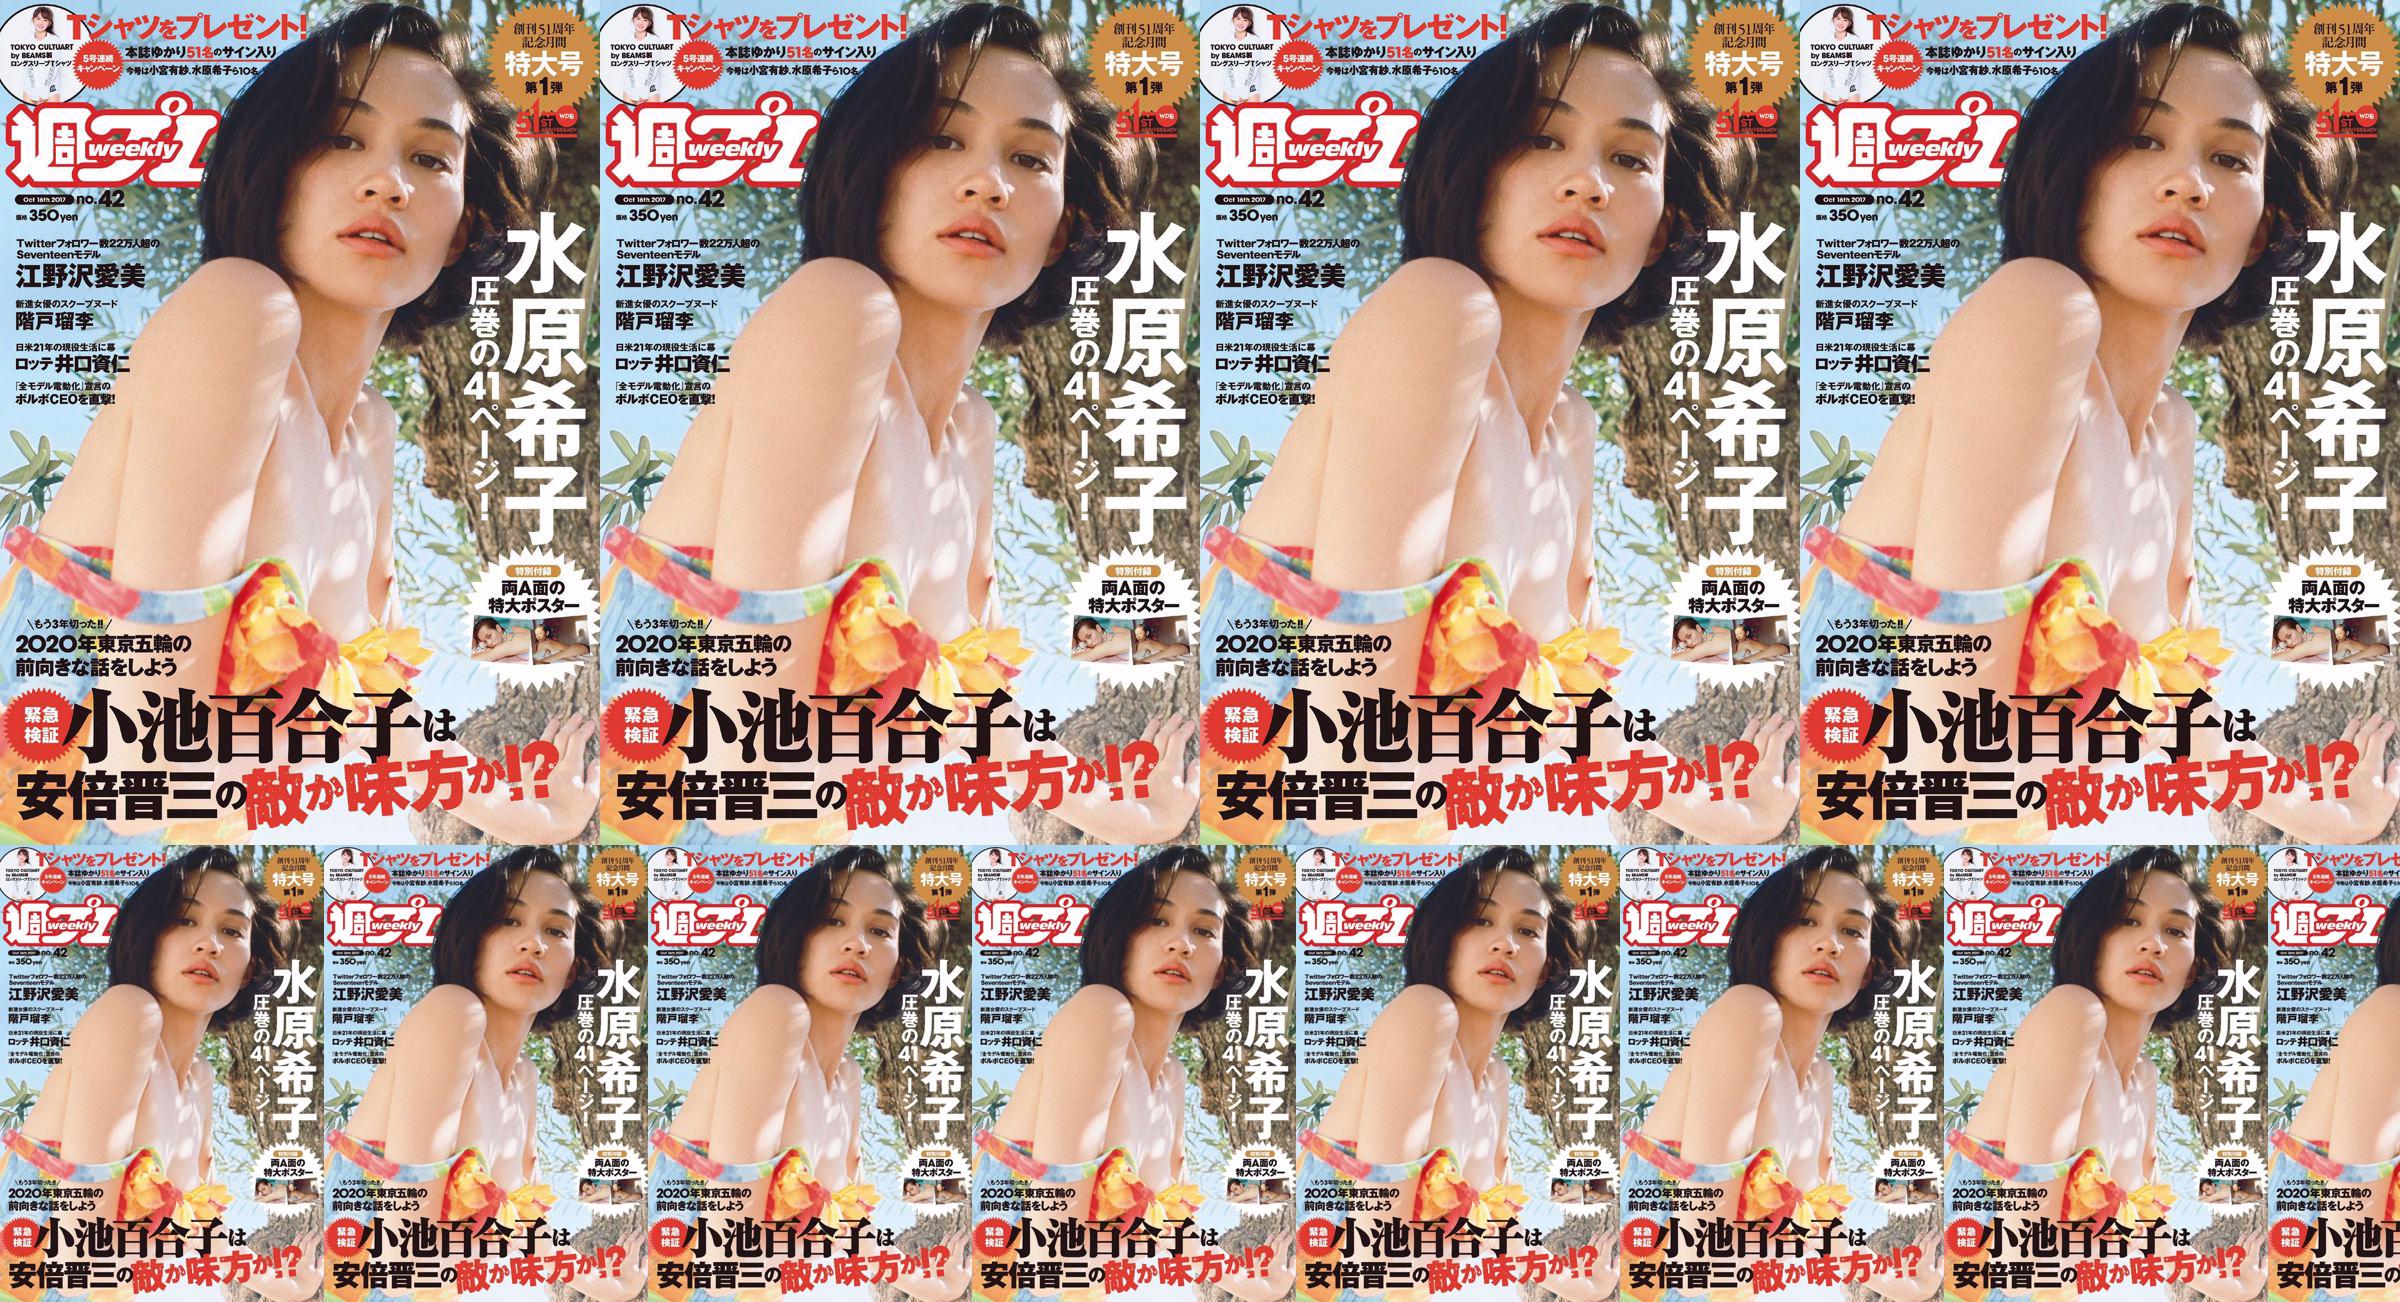 Kiko Mizuhara Manami Enosawa Serina Fukui Miu Nakamura Ruri Shinato [Weekly Playboy] 2017 Majalah Foto No.42 No.eeaf9f Halaman 2